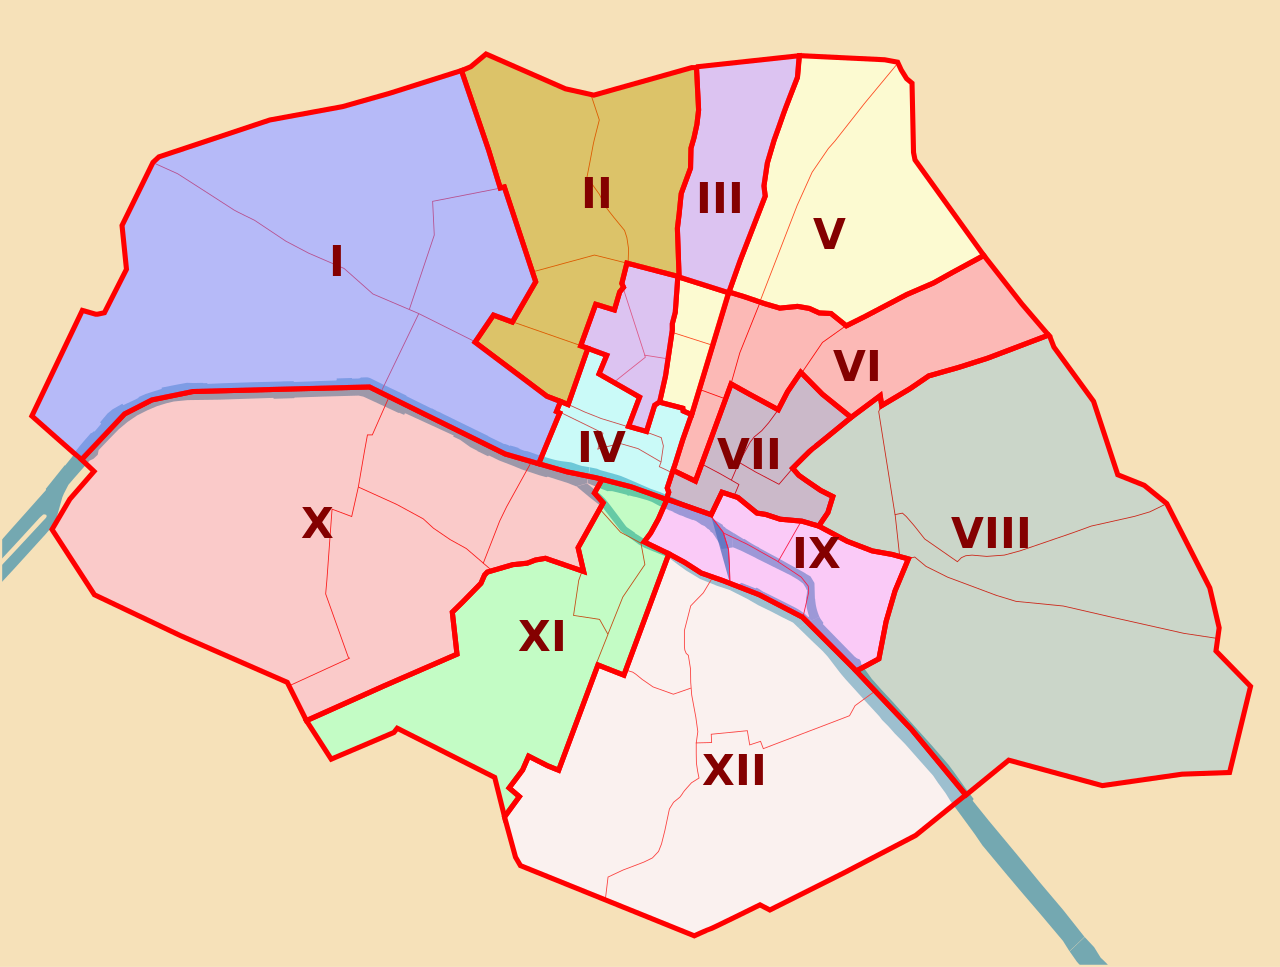 Plan de Paris entre 1795 et 1860. La ville est divisée en 12 arrondissements.